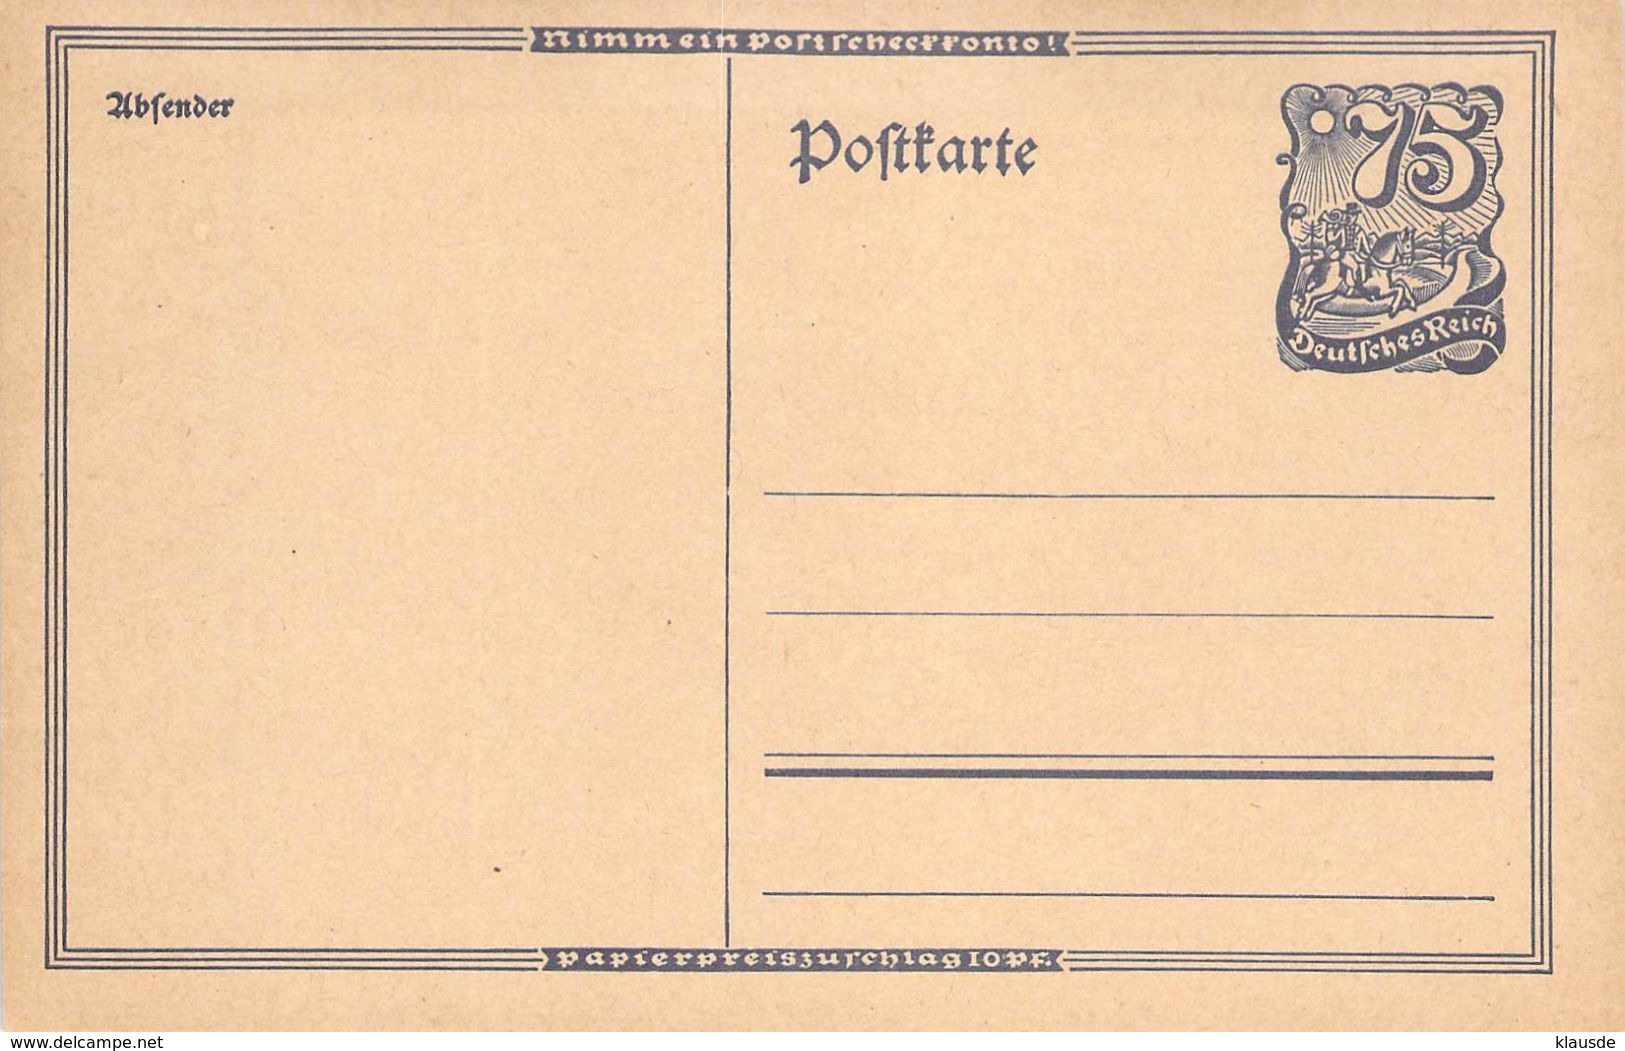 P146 Deutschland Deutsches Reich - Postcards